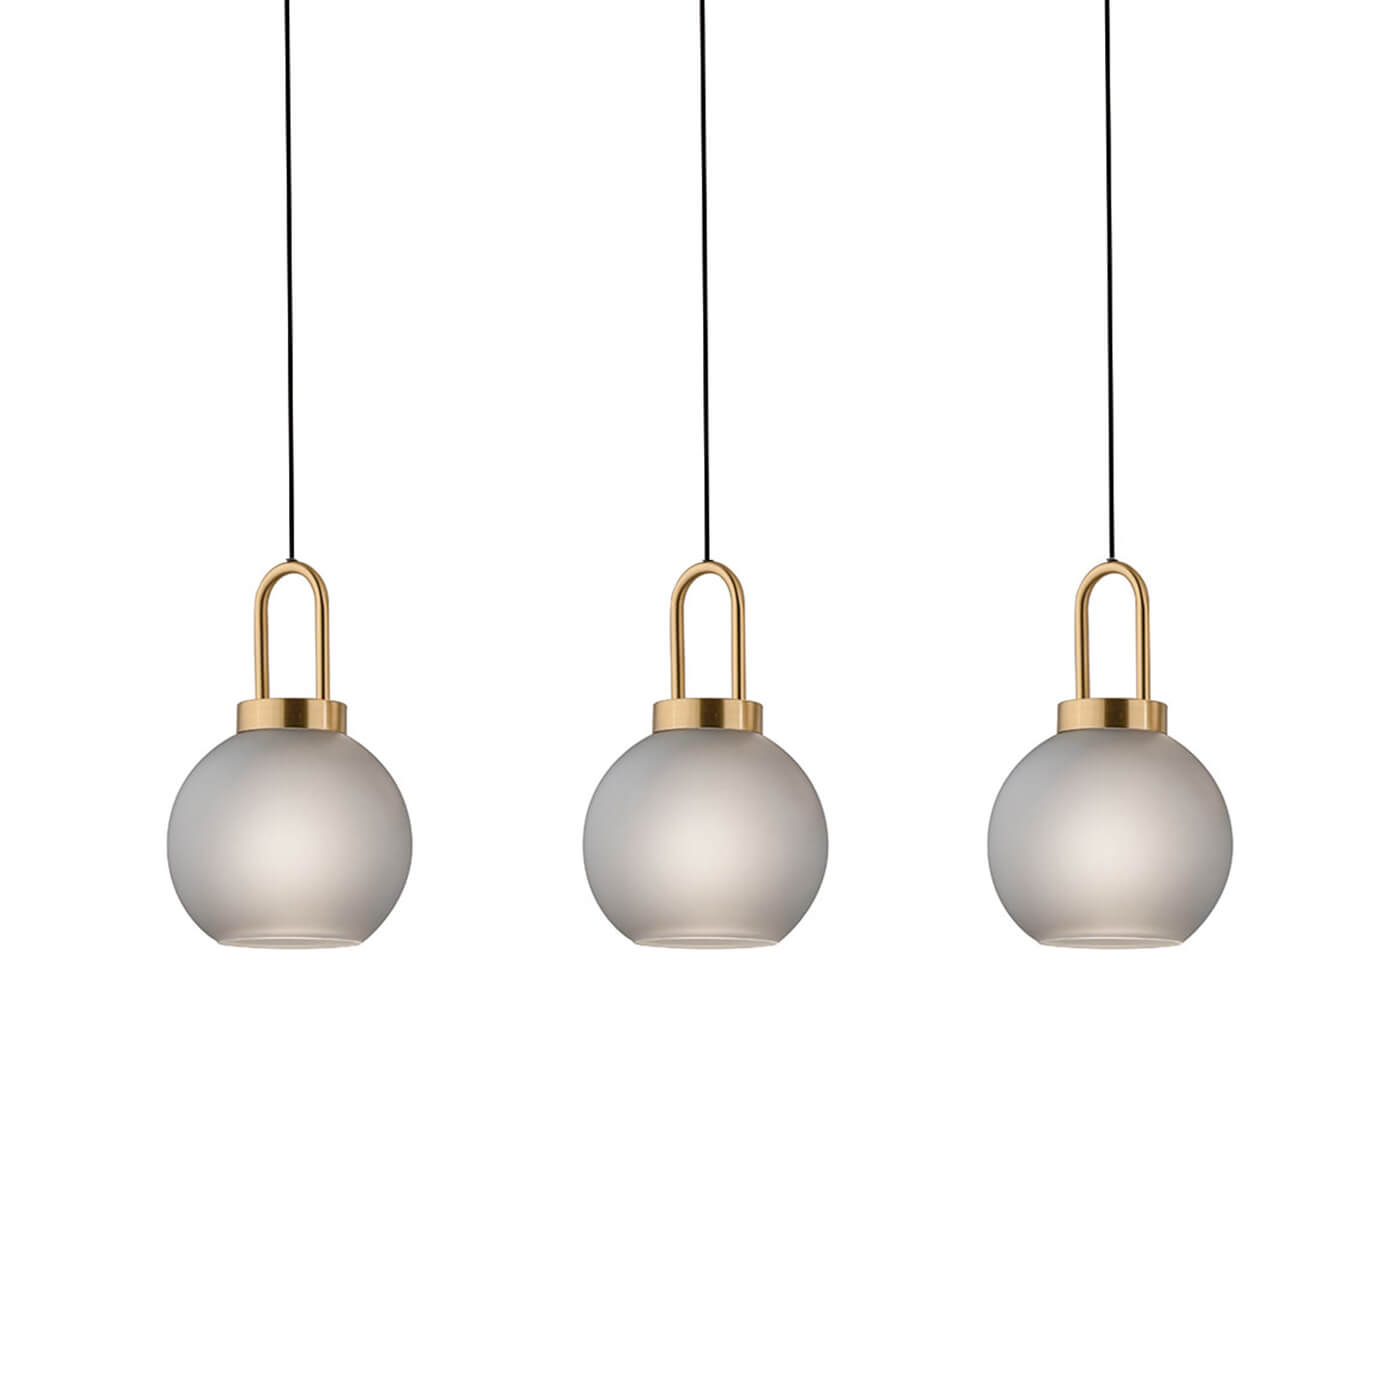 Cauti o lampa suspendata DORIA S3B din metal si sticla pentru living, design modern, pentru living, dining sau dormitor din colectia de lustre si candelabre Domicilio?